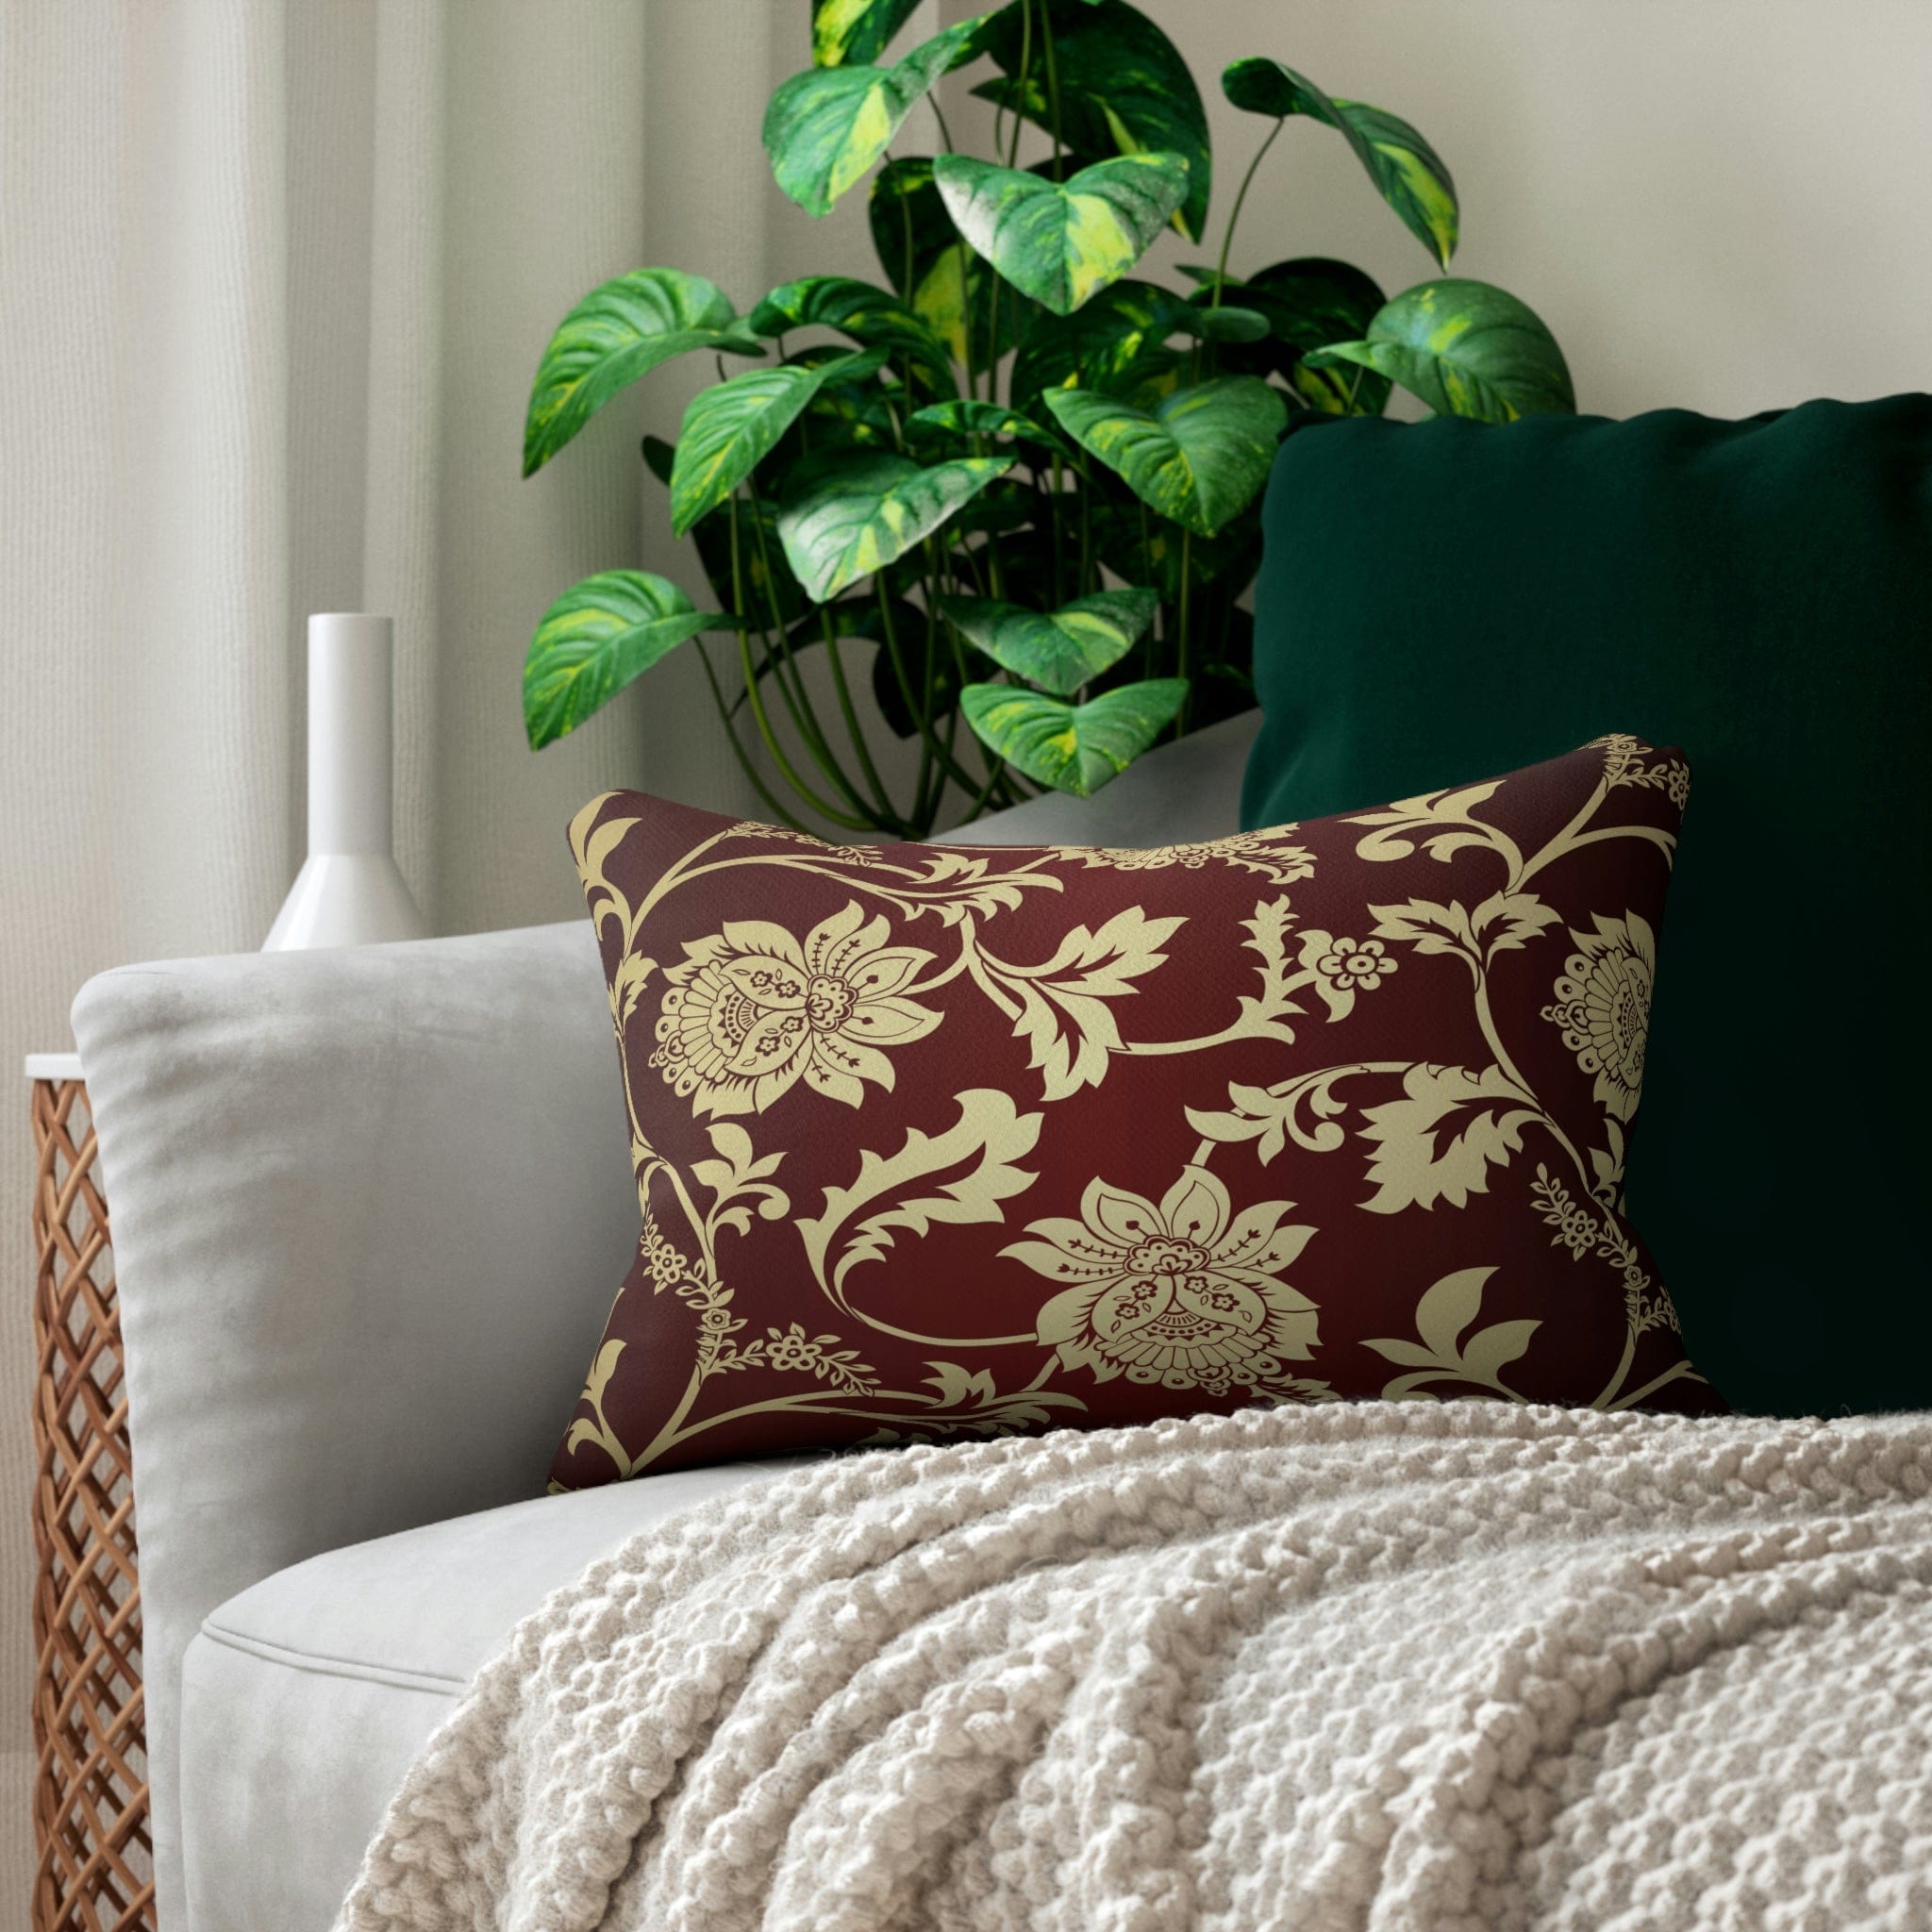 Kate McEnroe New York Lumbar Pillow in Traditional Indian Floral Paisley Lumbar Pillows 20&quot; × 14&quot; 13513630307199604862